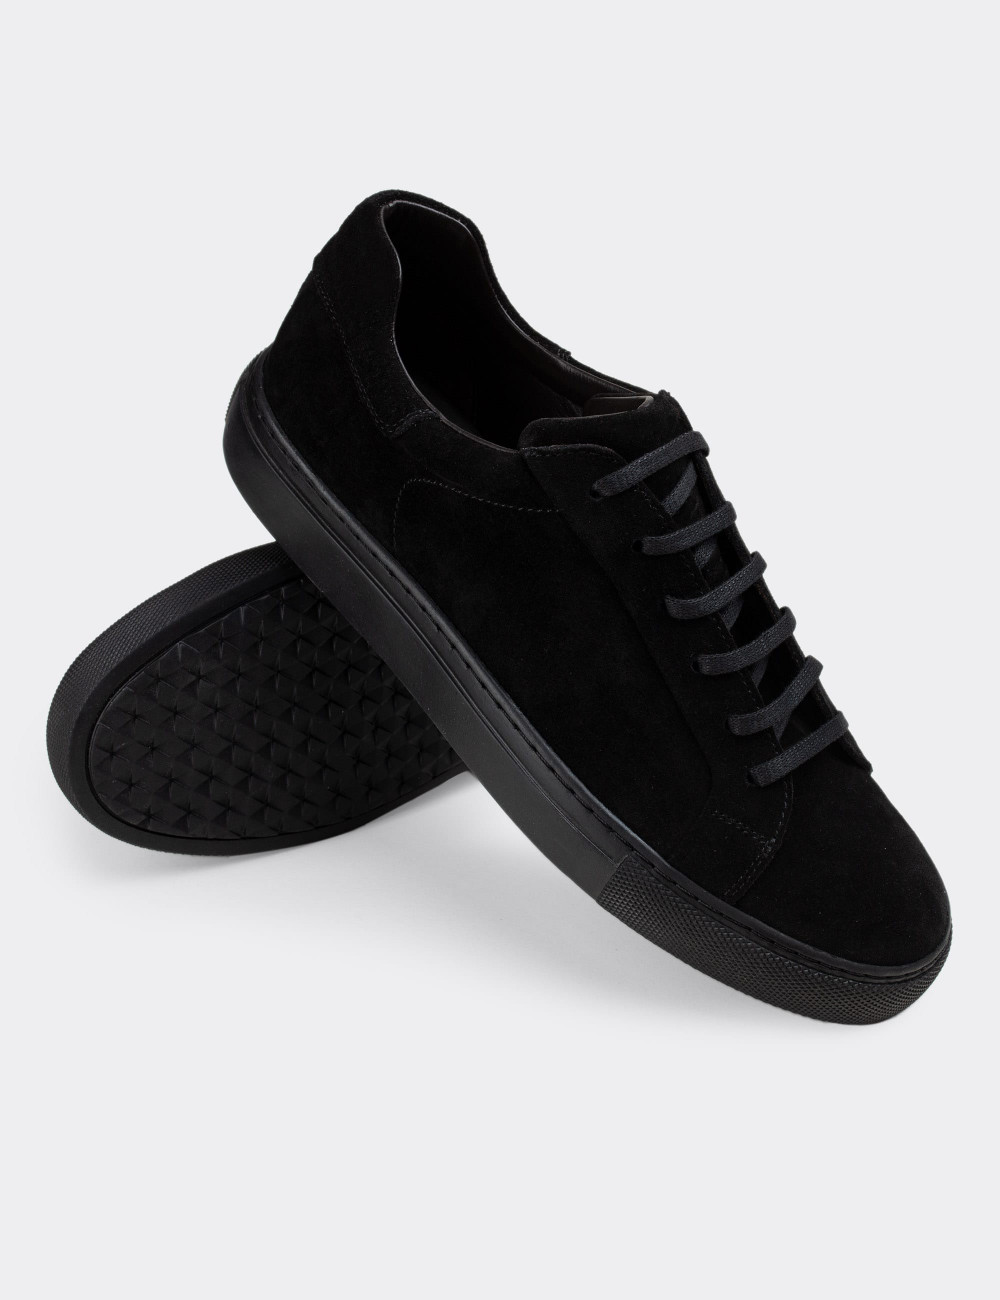 Hakiki Süet Siyah Sneaker Erkek Ayakkabı - 01829MSYHC01